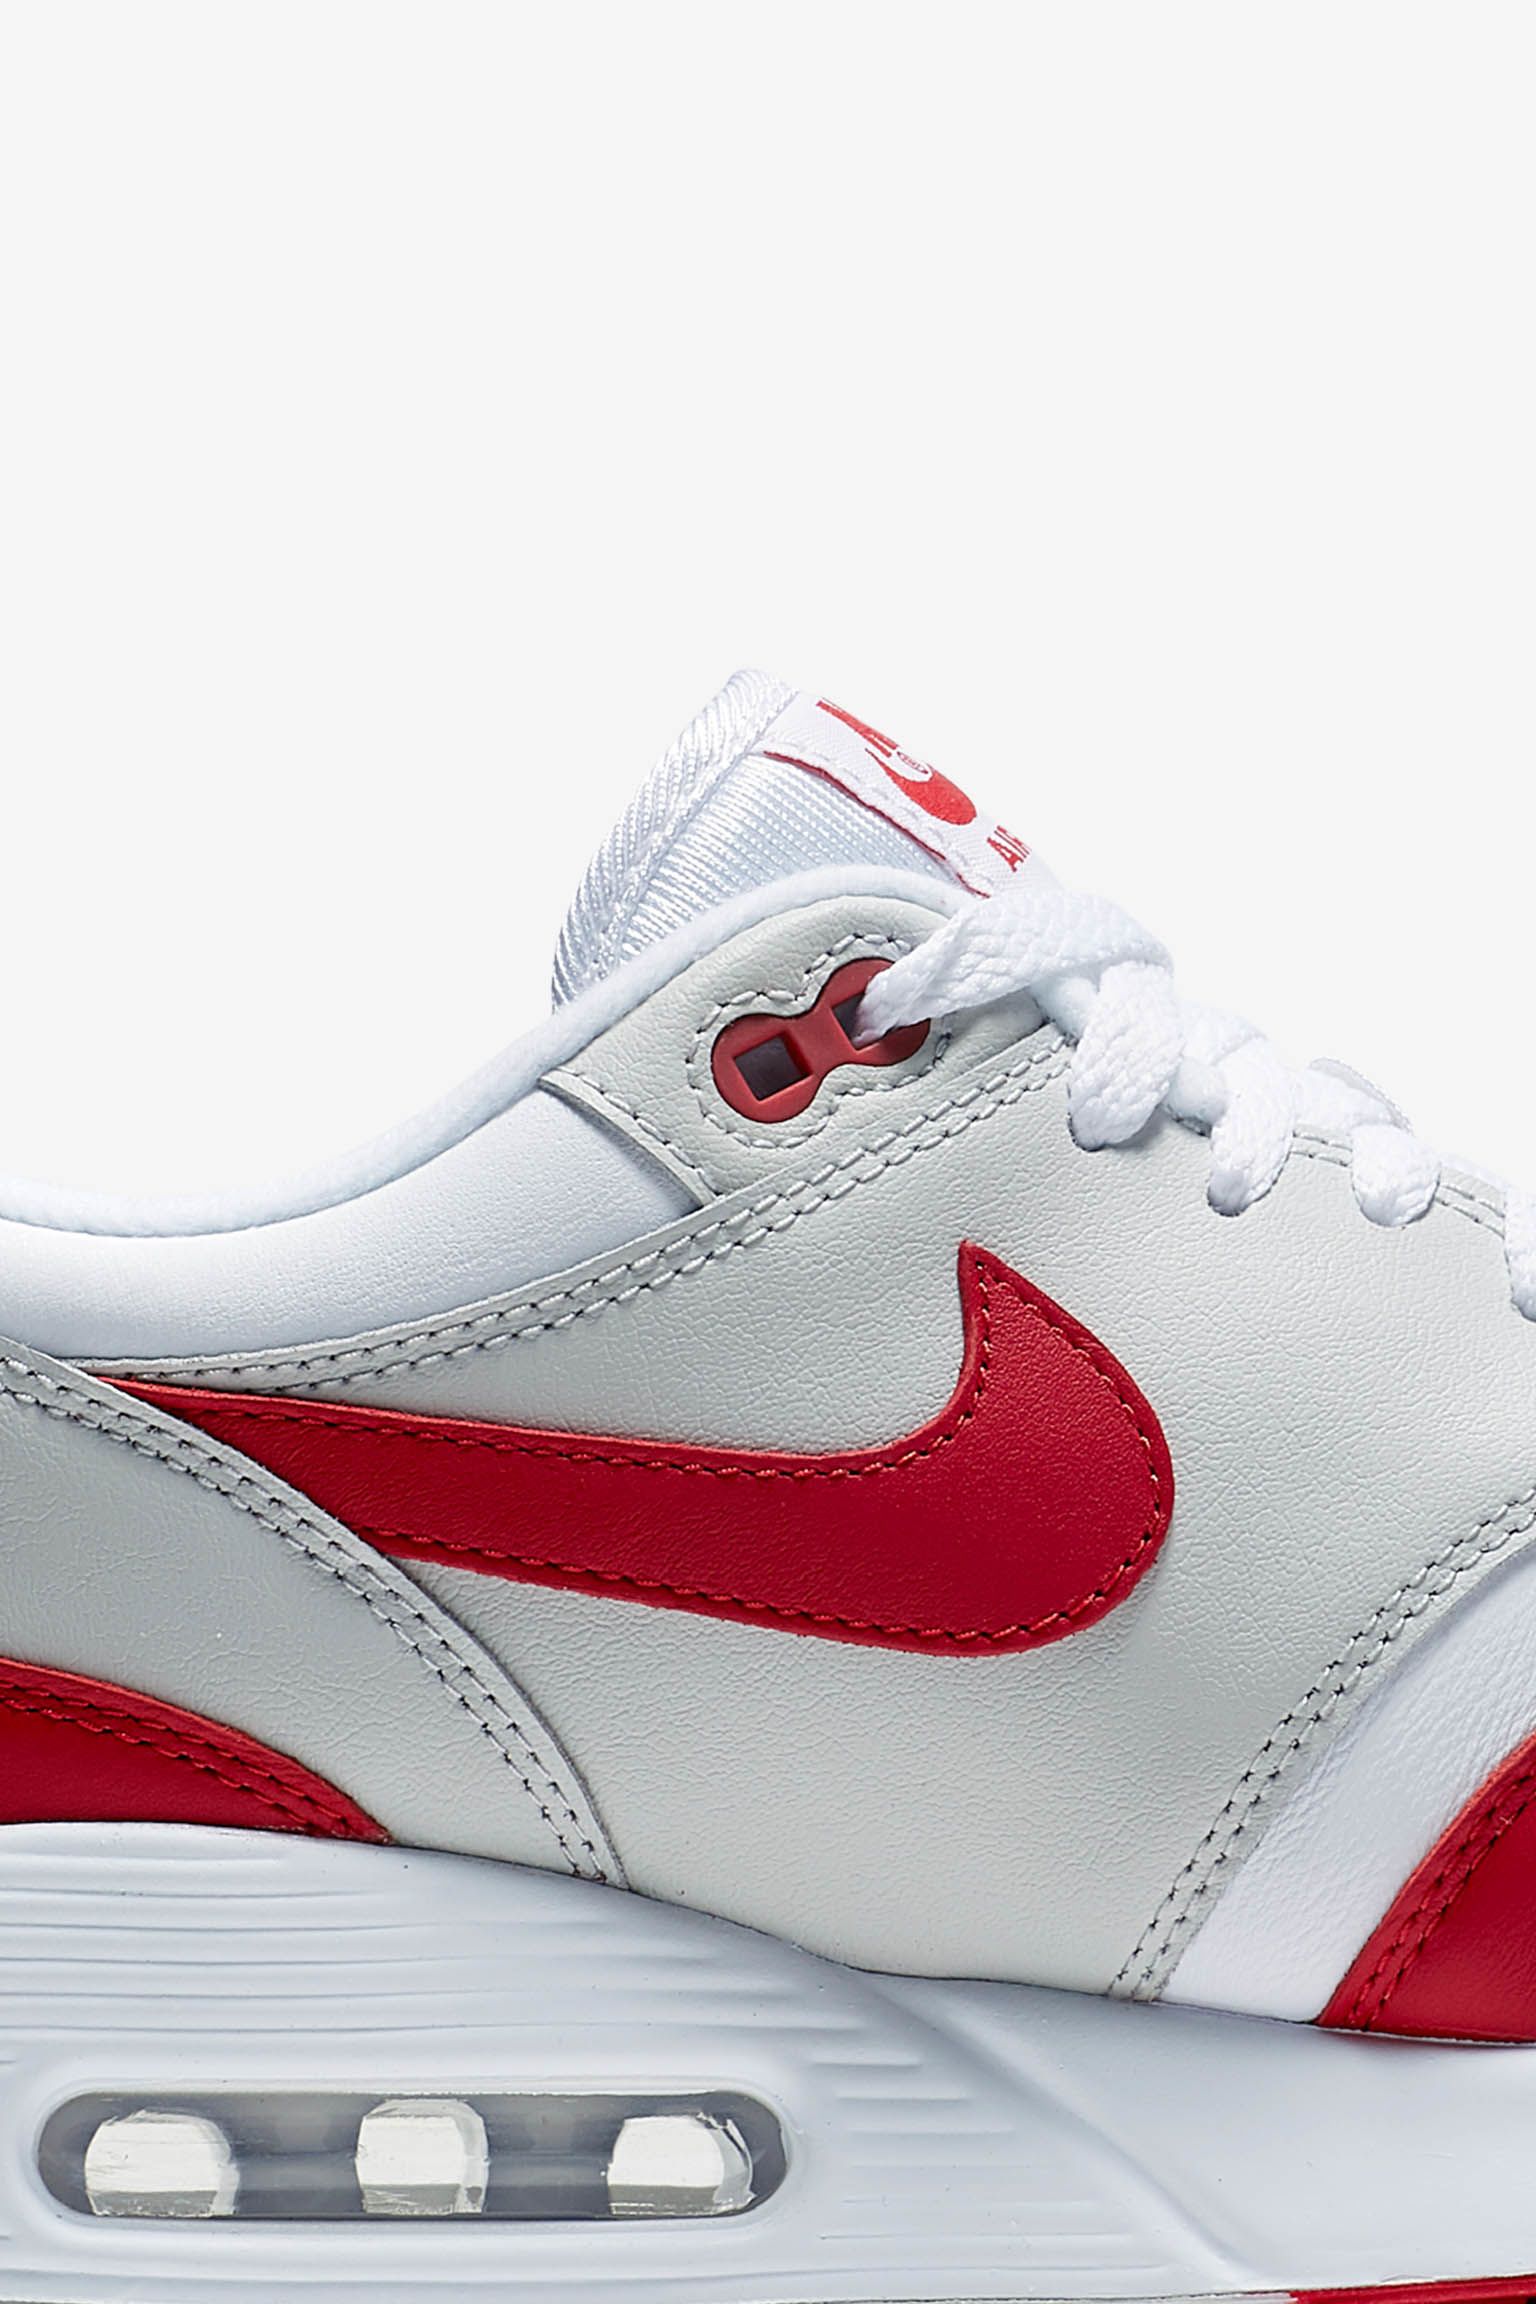 مظلات صغيره Nike Air Max 90/1 'White & University Red' Release Date. Nike SNKRS مظلات صغيره